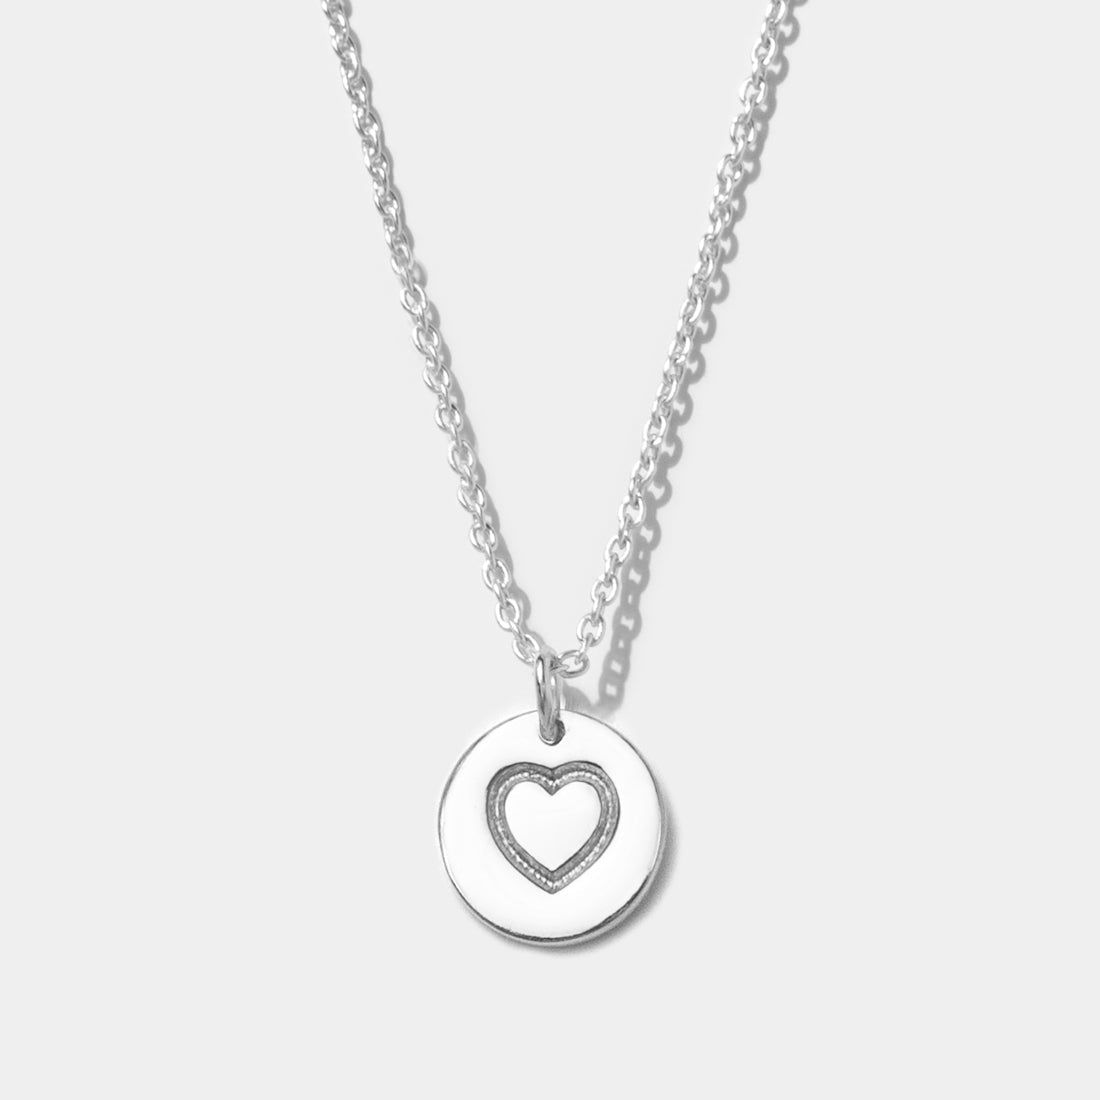 Halskette Love Tag Silber - Fleurs des Prés Jewelry